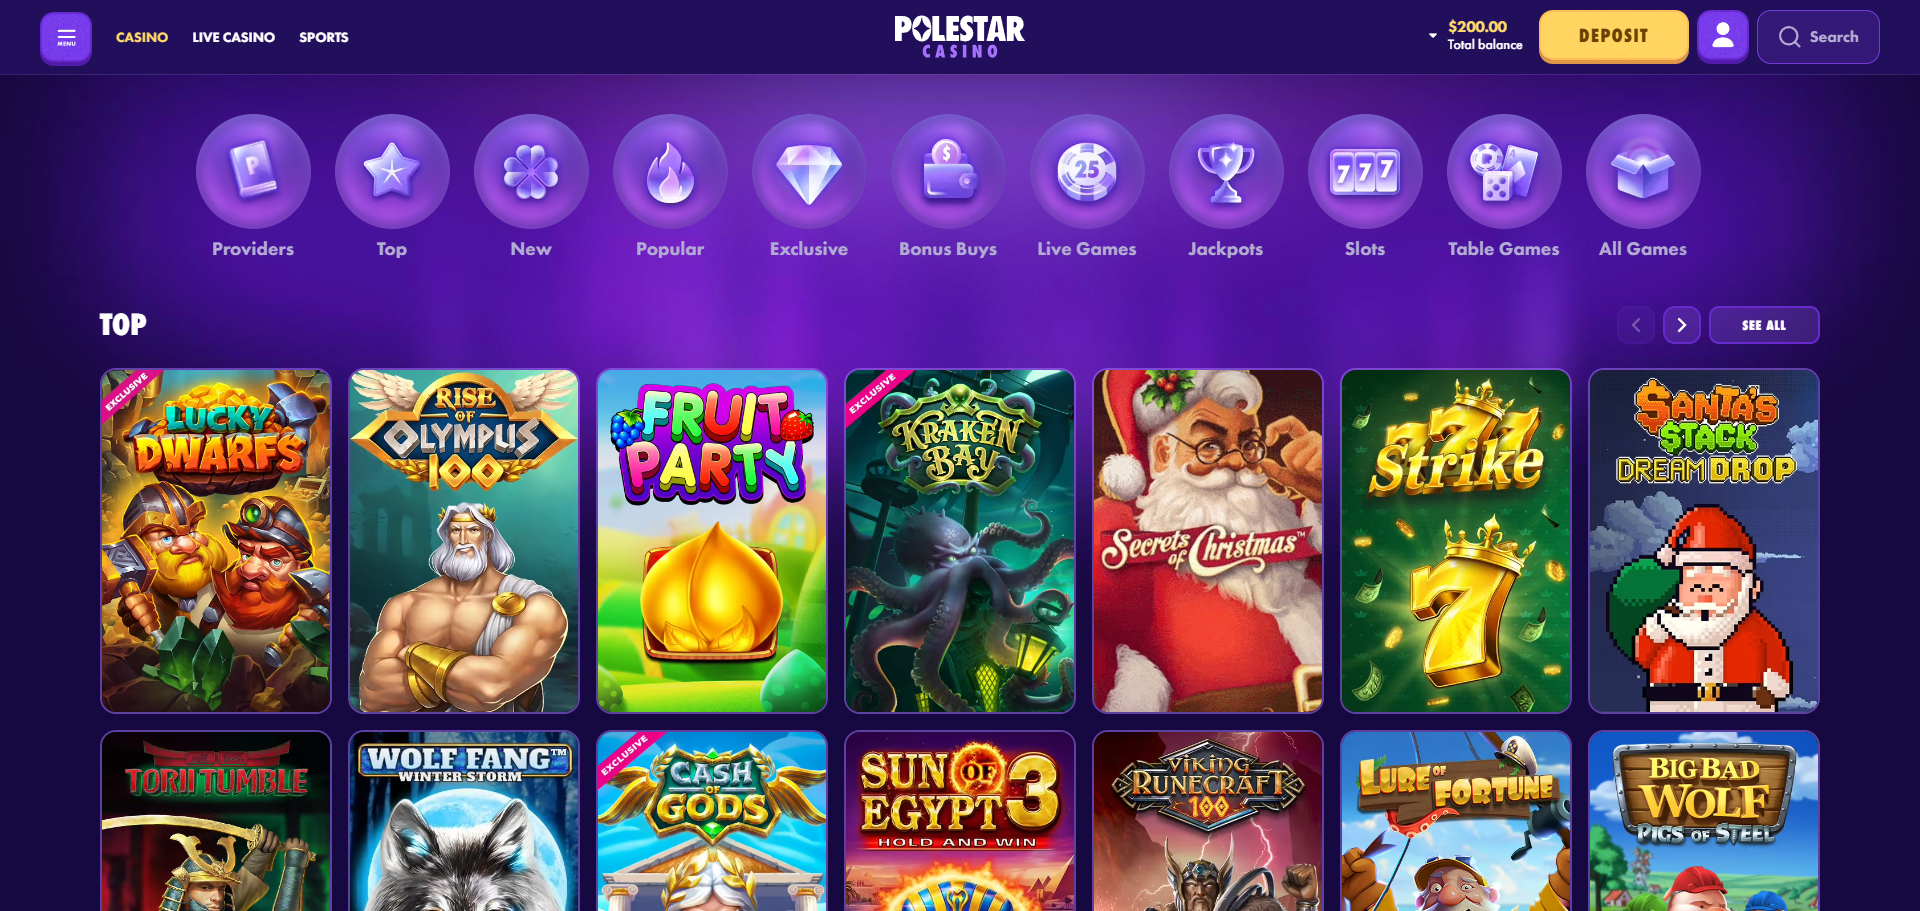 Polestar Casino Games